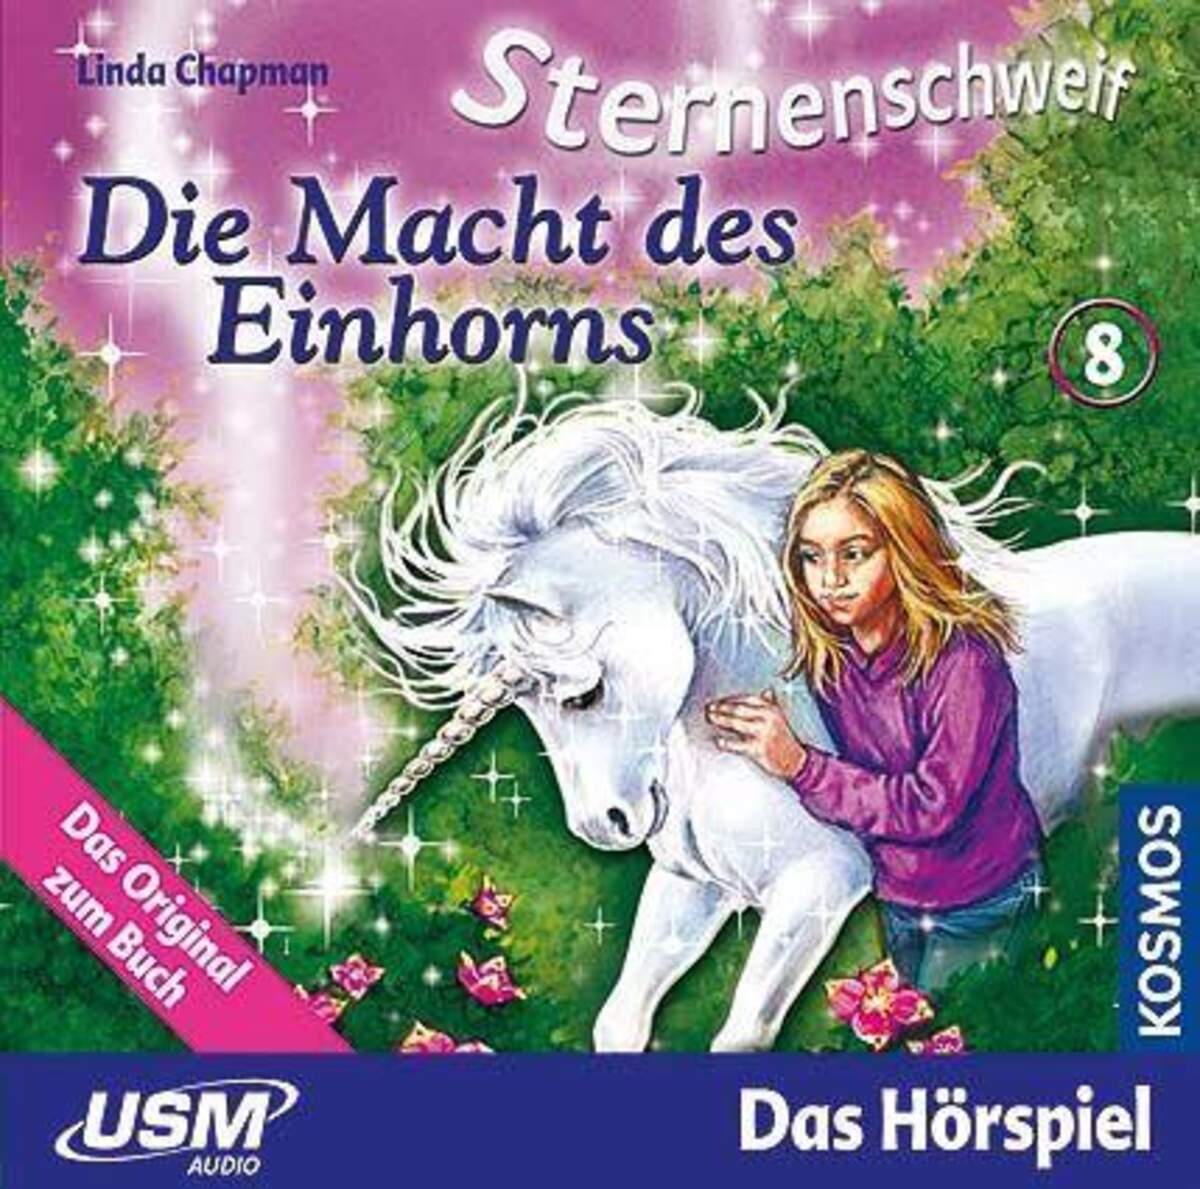 KOSMOS Hörspiel-CD Sternenschweif 8 Die Macht des Einhorns